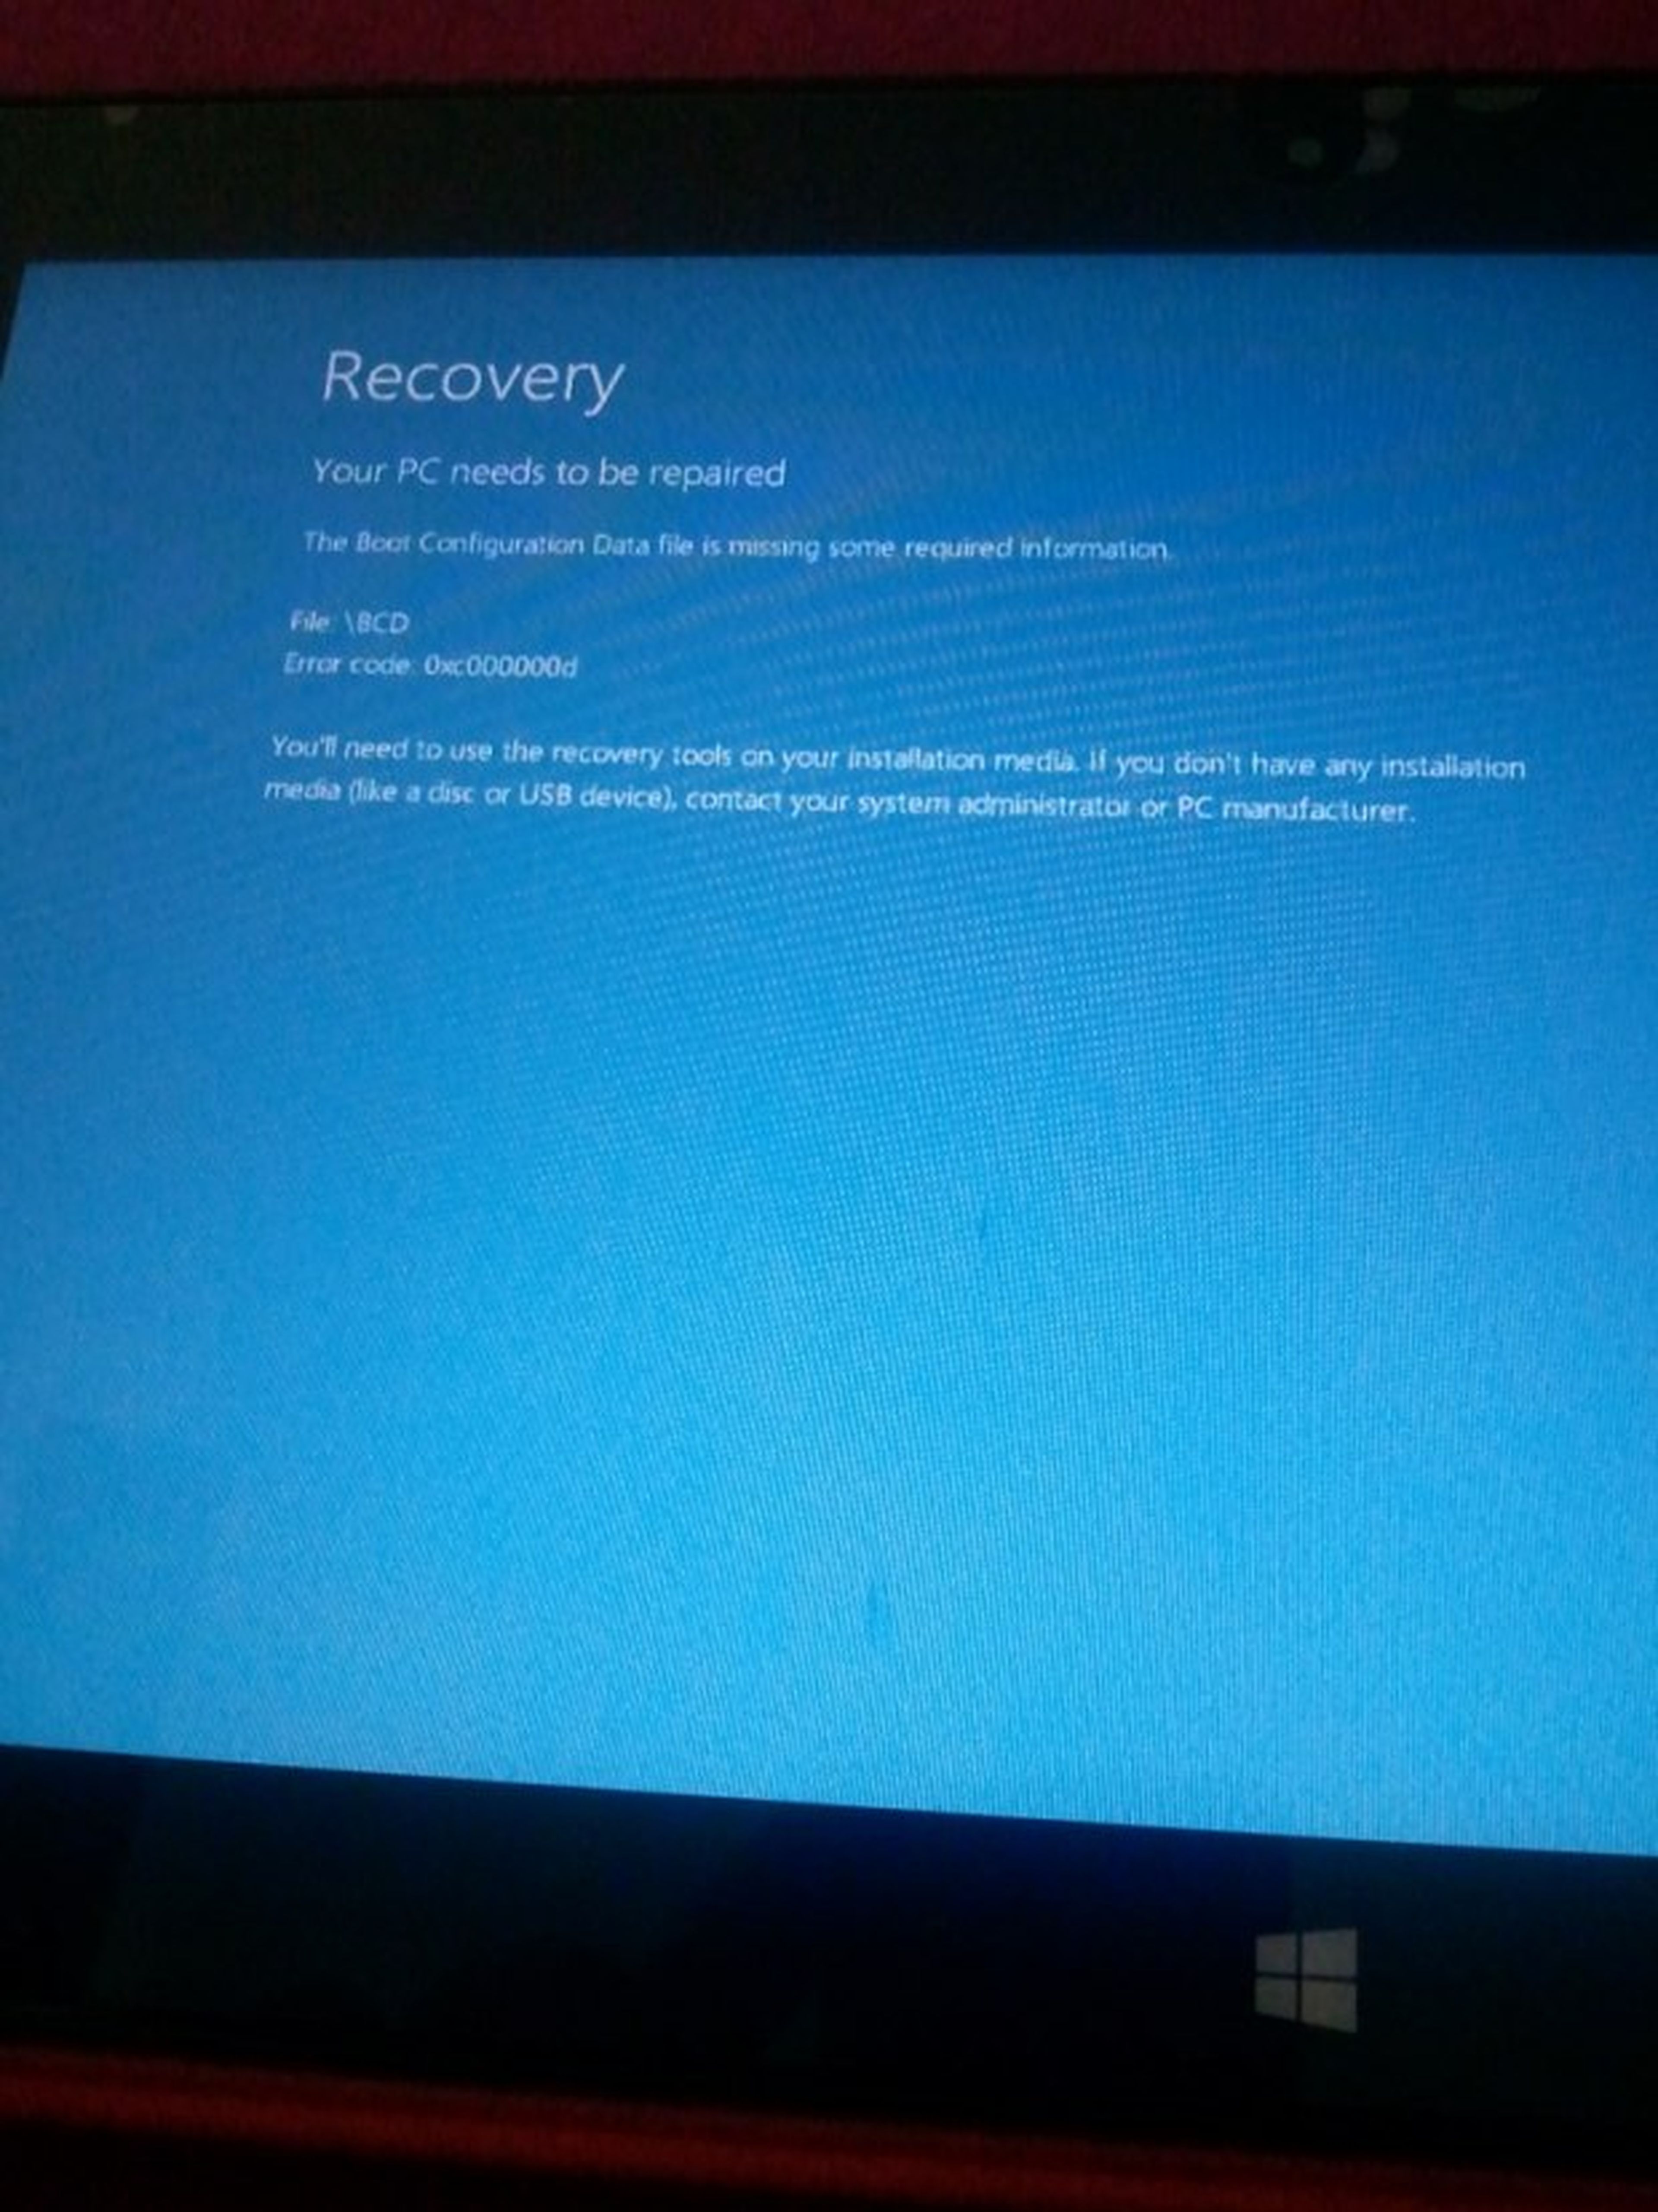 Windows 8.1 RT ha sido retirado de la tienda de Windows